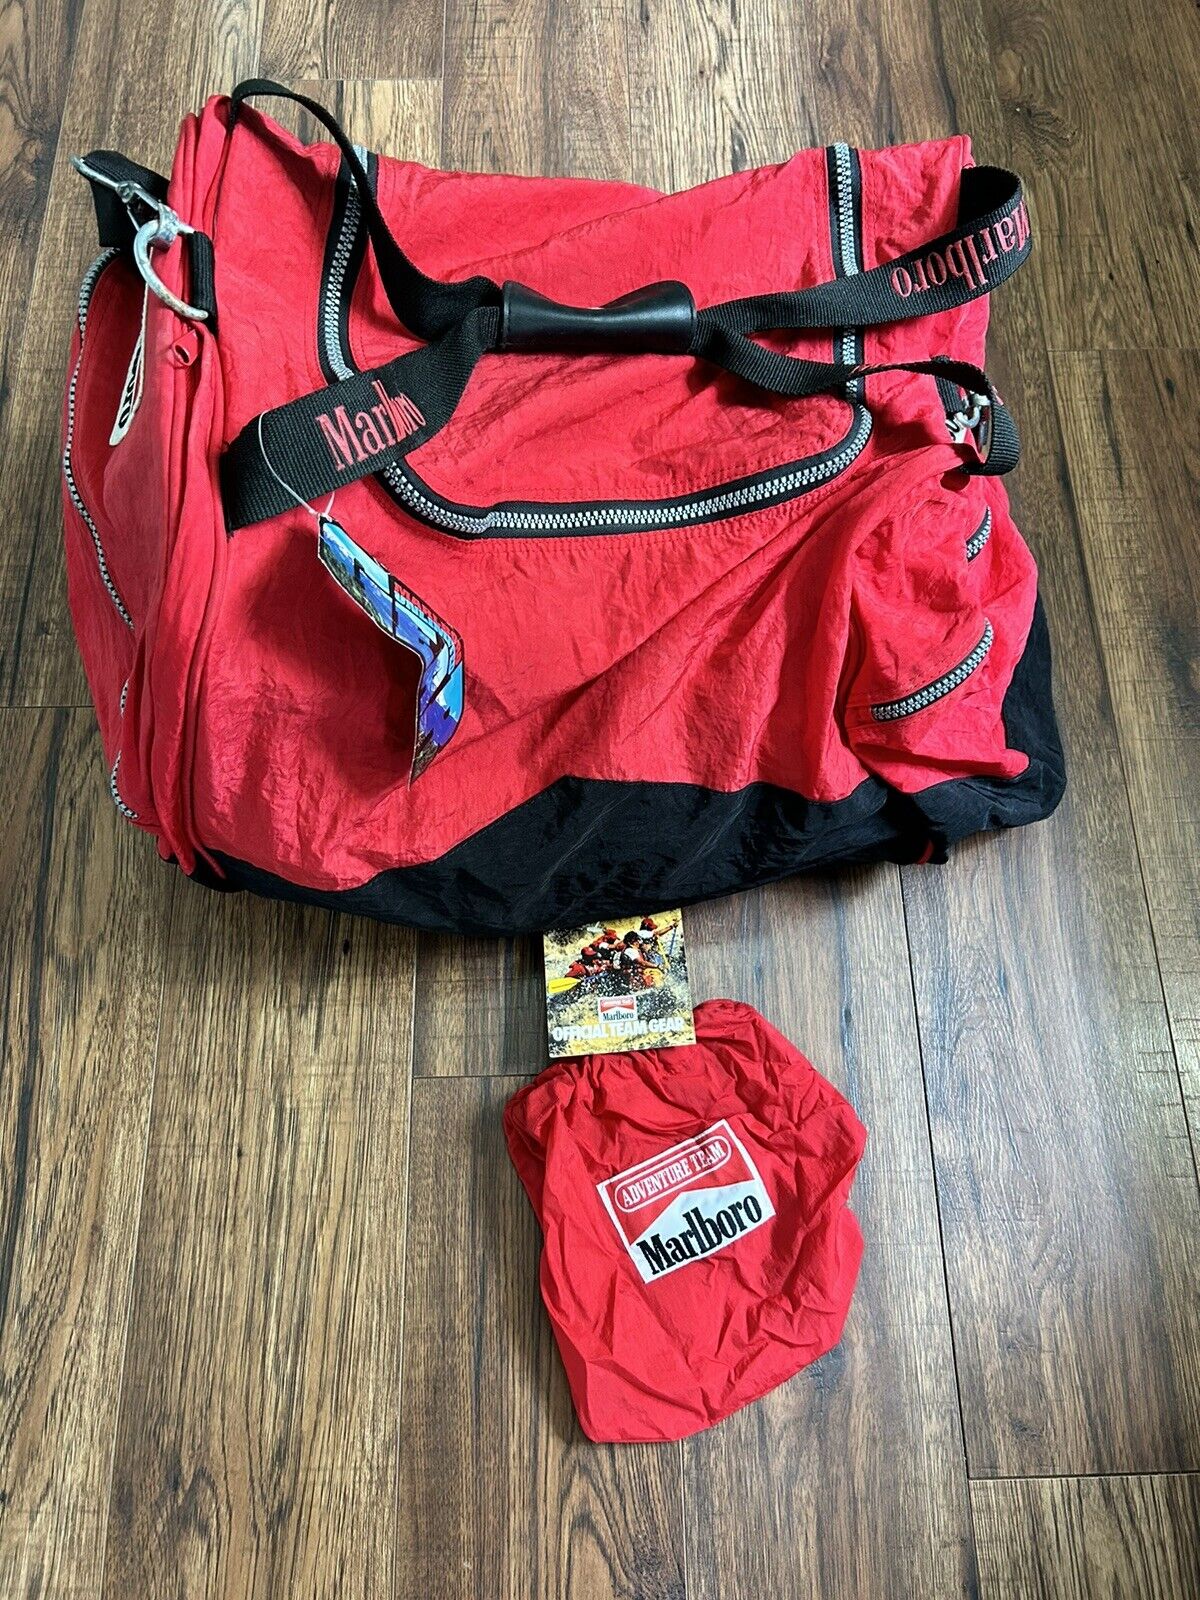 Vintage Marlboro Unlimited Adventure Travel Duffel Bag & Adventure Team Bag New